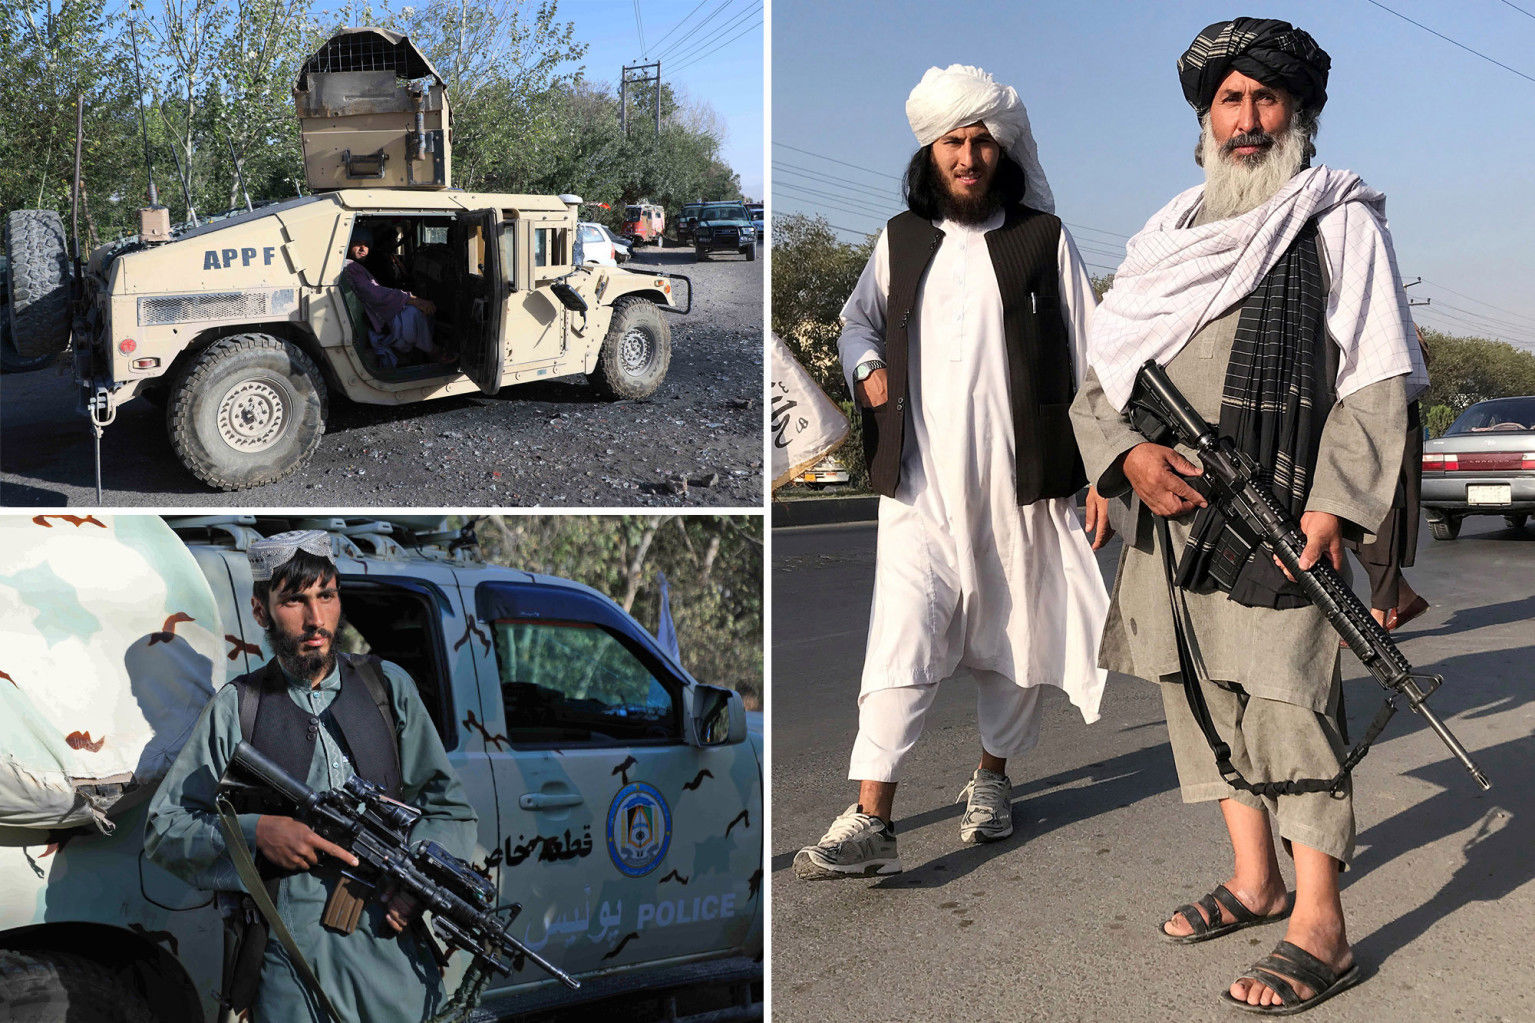 تصویری معنادار درباره سقوط افغانستان به دست طالبان